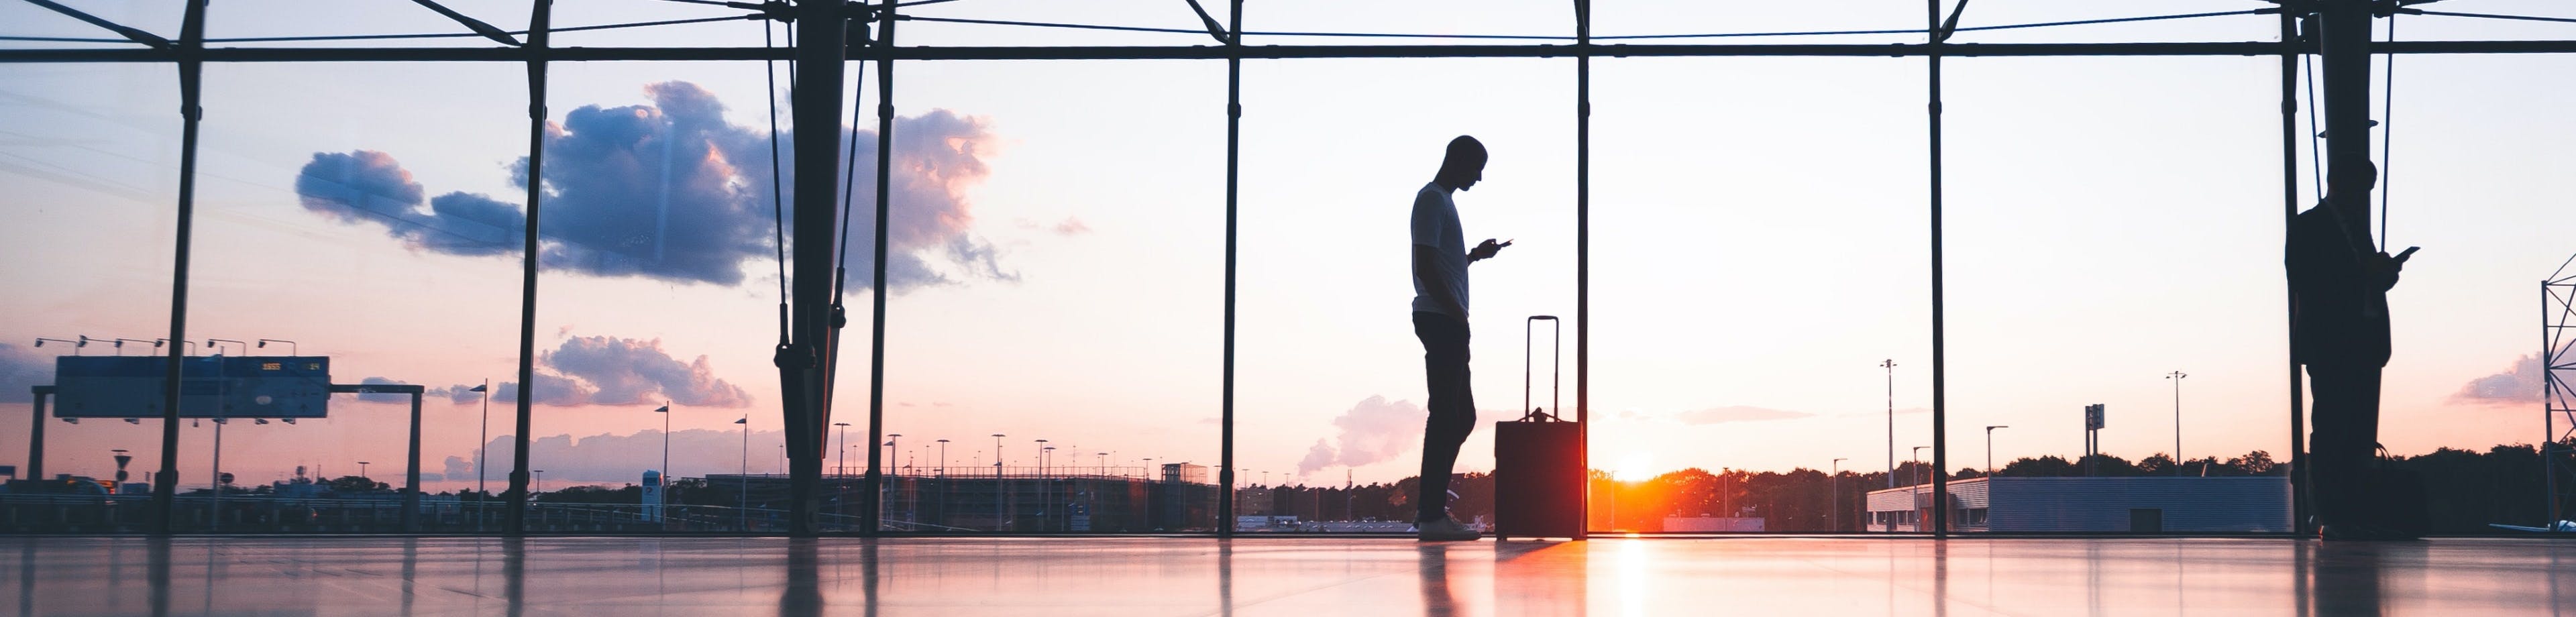 Een ondernemer staat met een reiskoffer op het vliegveld. Verzeker uw medewerkers voor personenhulp en geneeskundige kosten als zij voor het werk op reis gaan. 